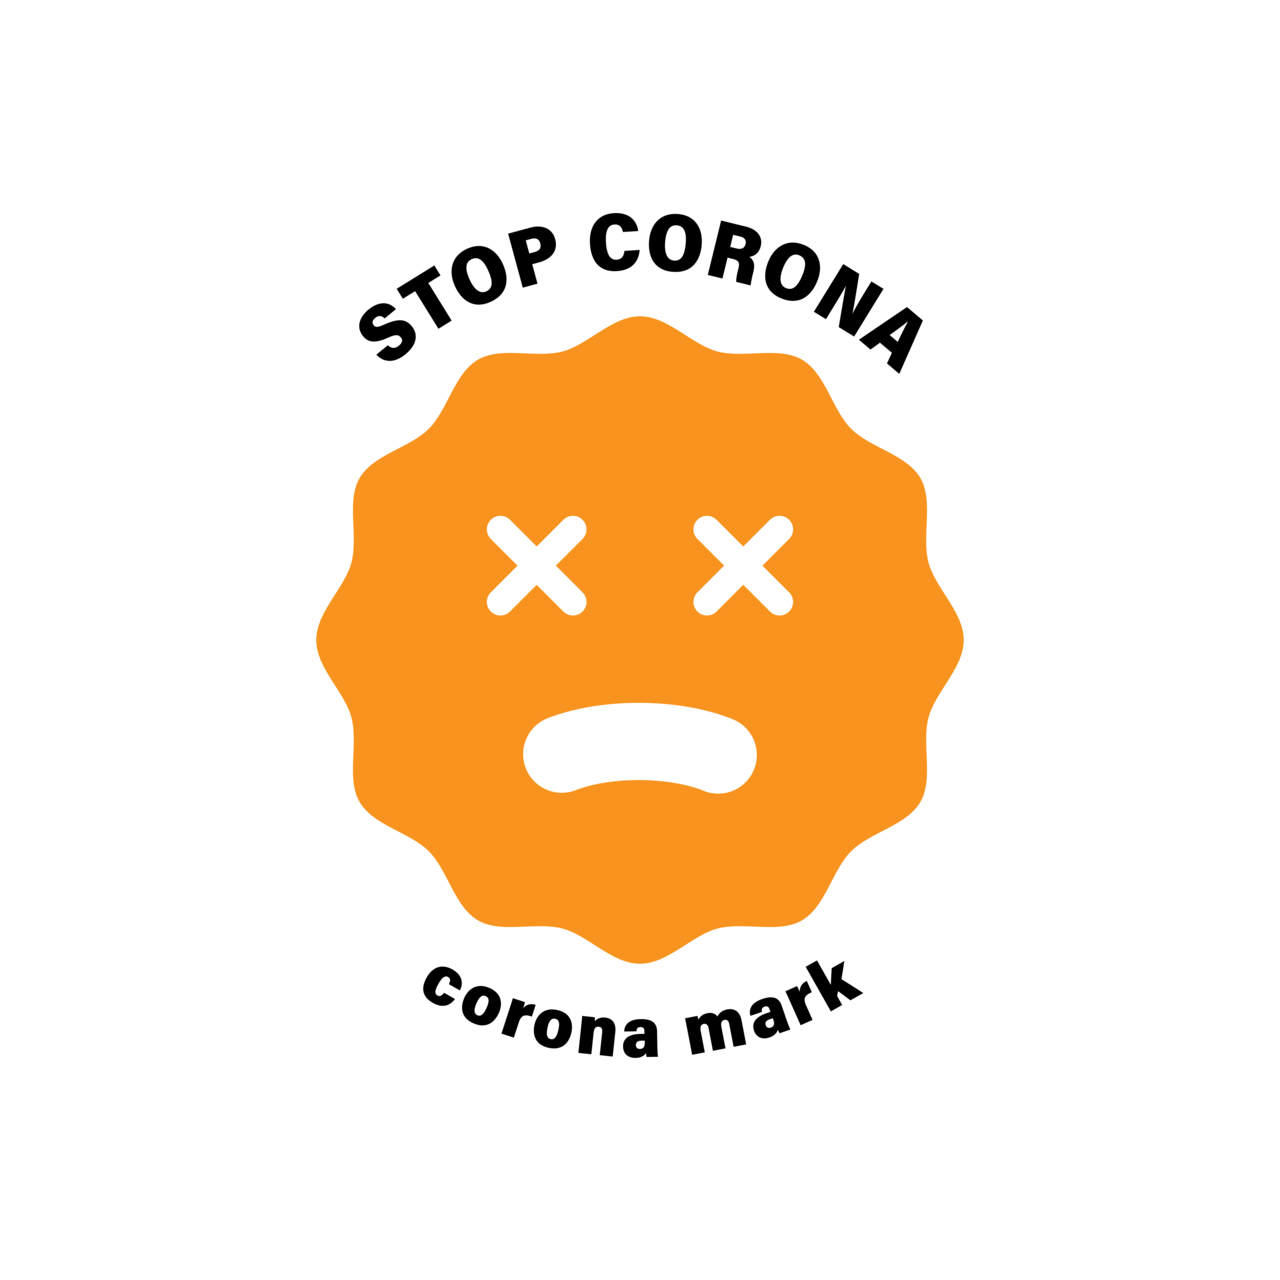 見えない敵を見える化する コロナマーク を作りました ストップコロナ コロナマーク Corona Mark Note